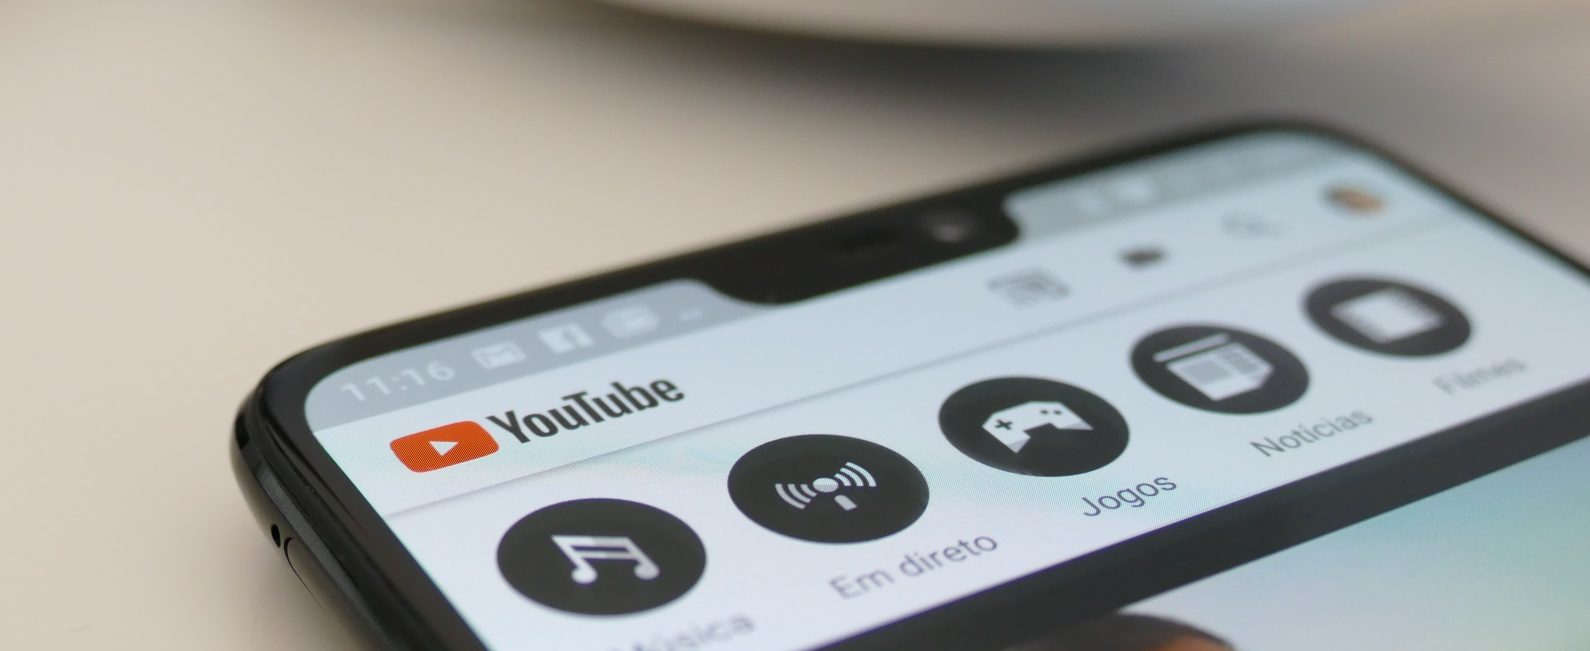 Akhwat Jadi Youtubers Apa Sudah Tahu Hukum Akhwat Upload Video ke Youtube bimbingan islam